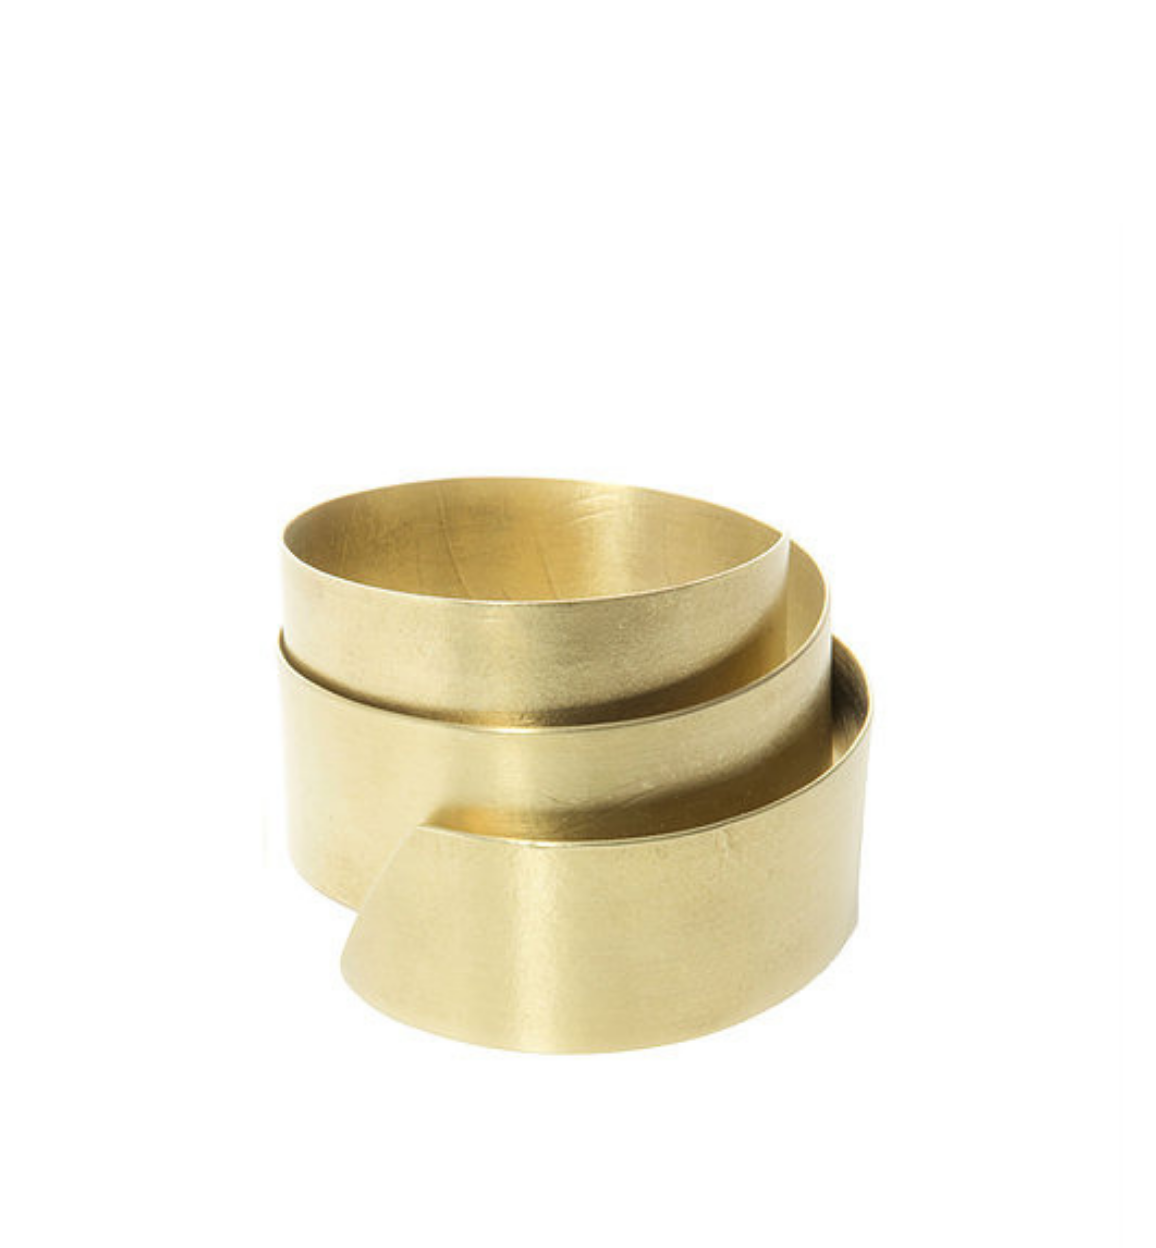 A three-layered brass thick bangle